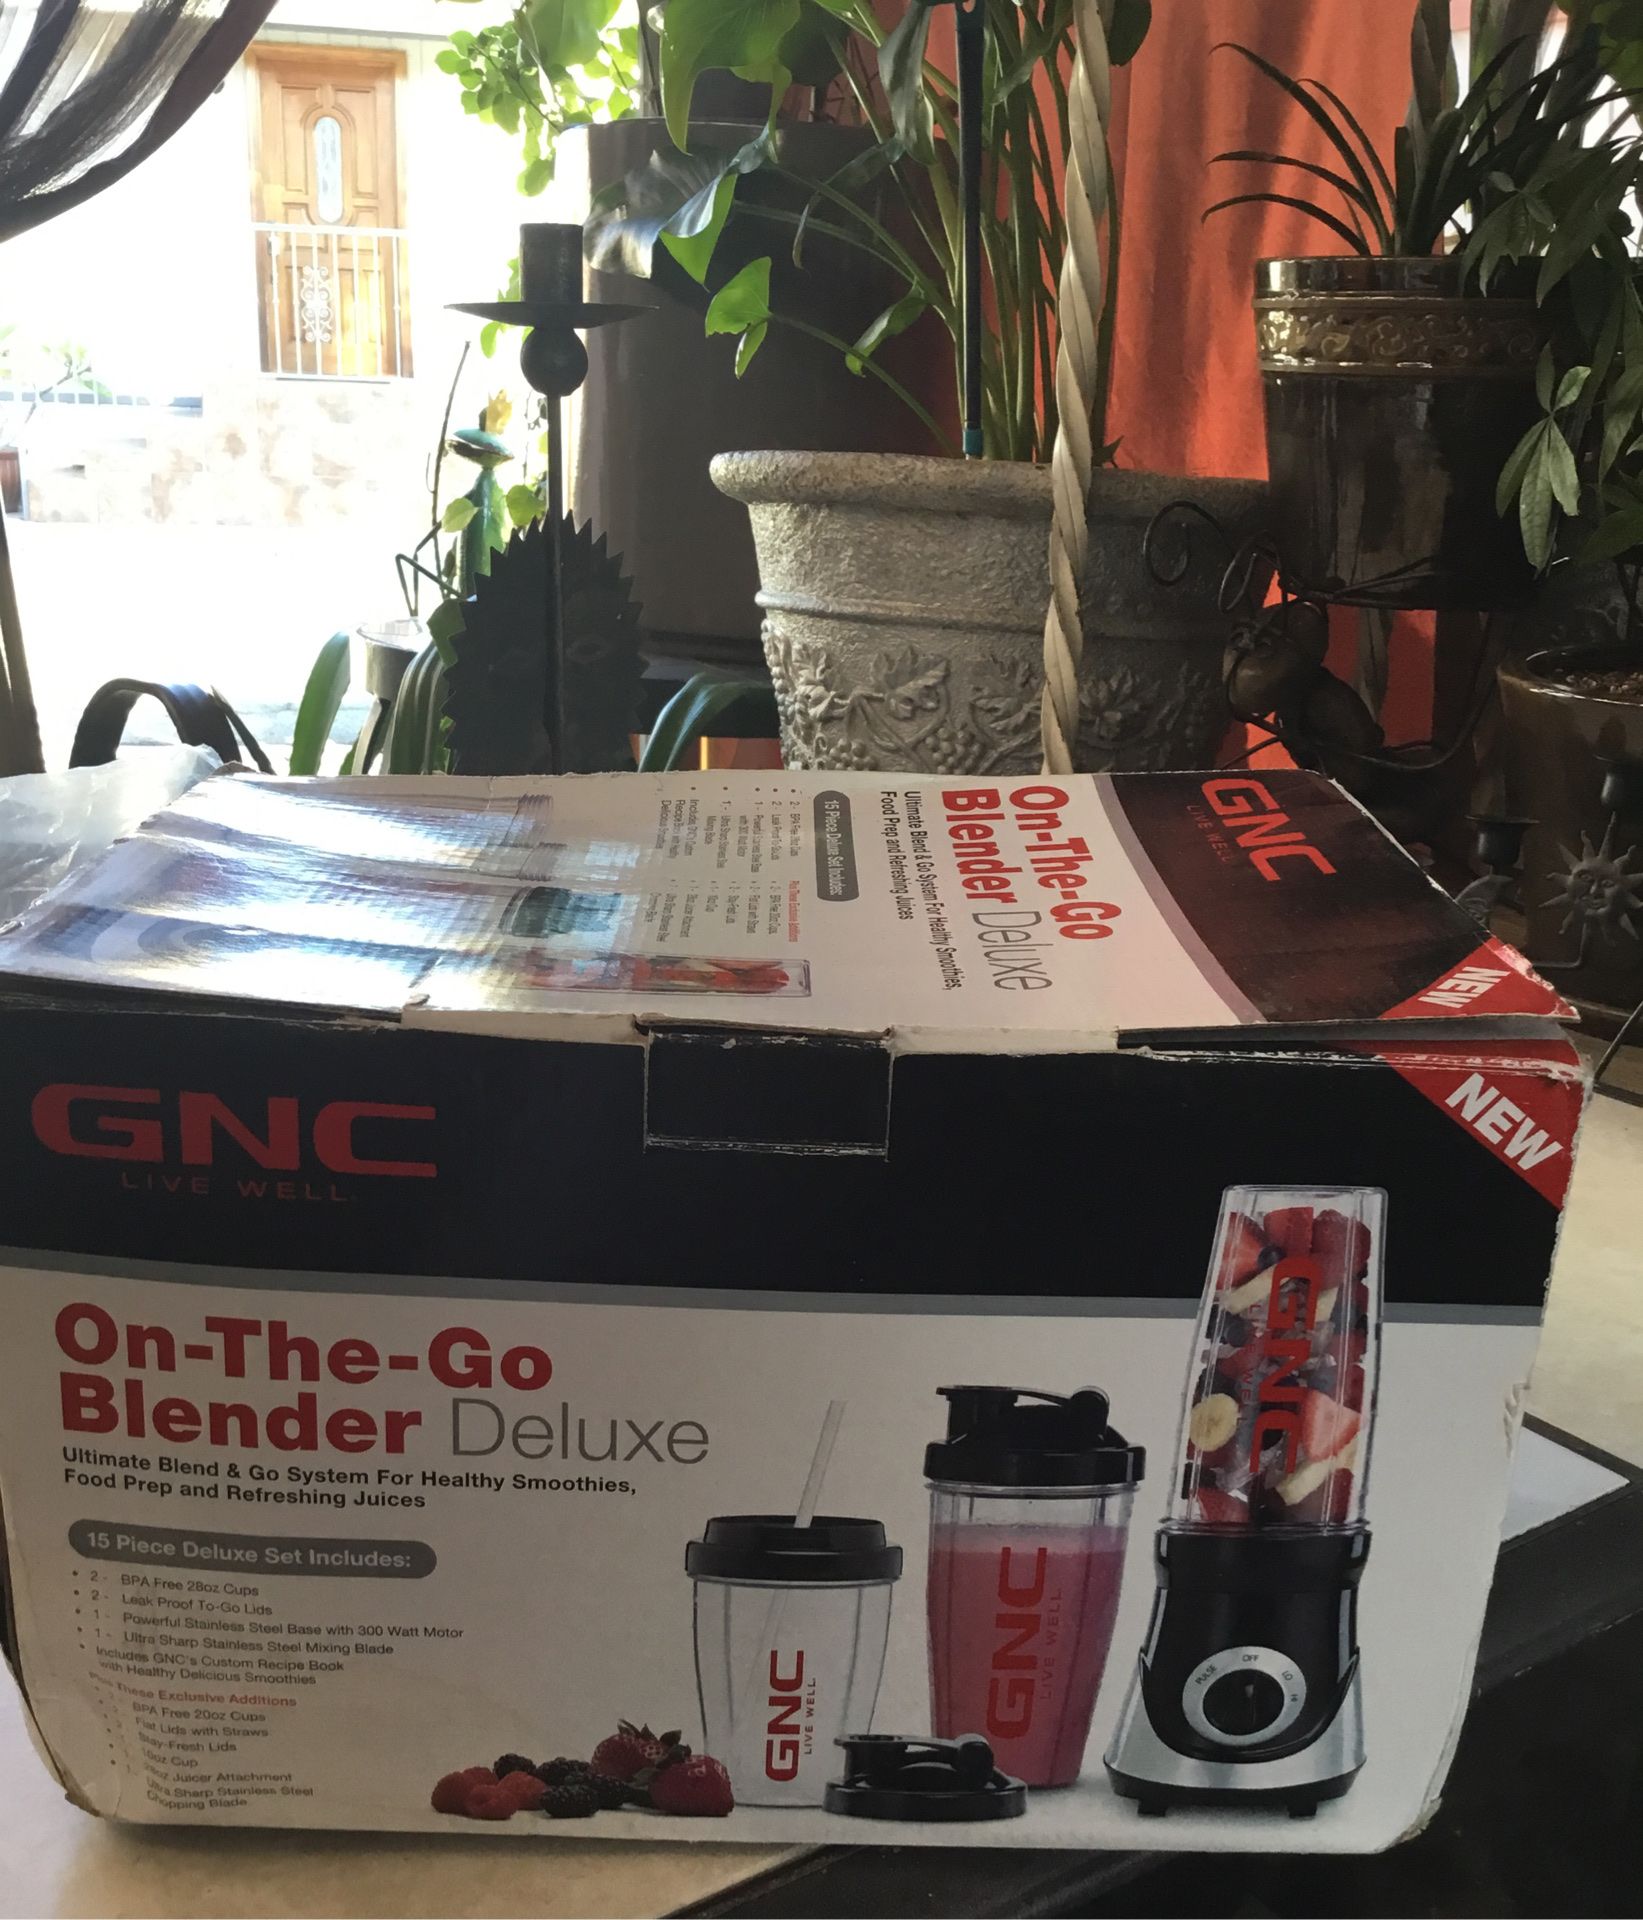 GNC On-The- Go Blender Deluxe.